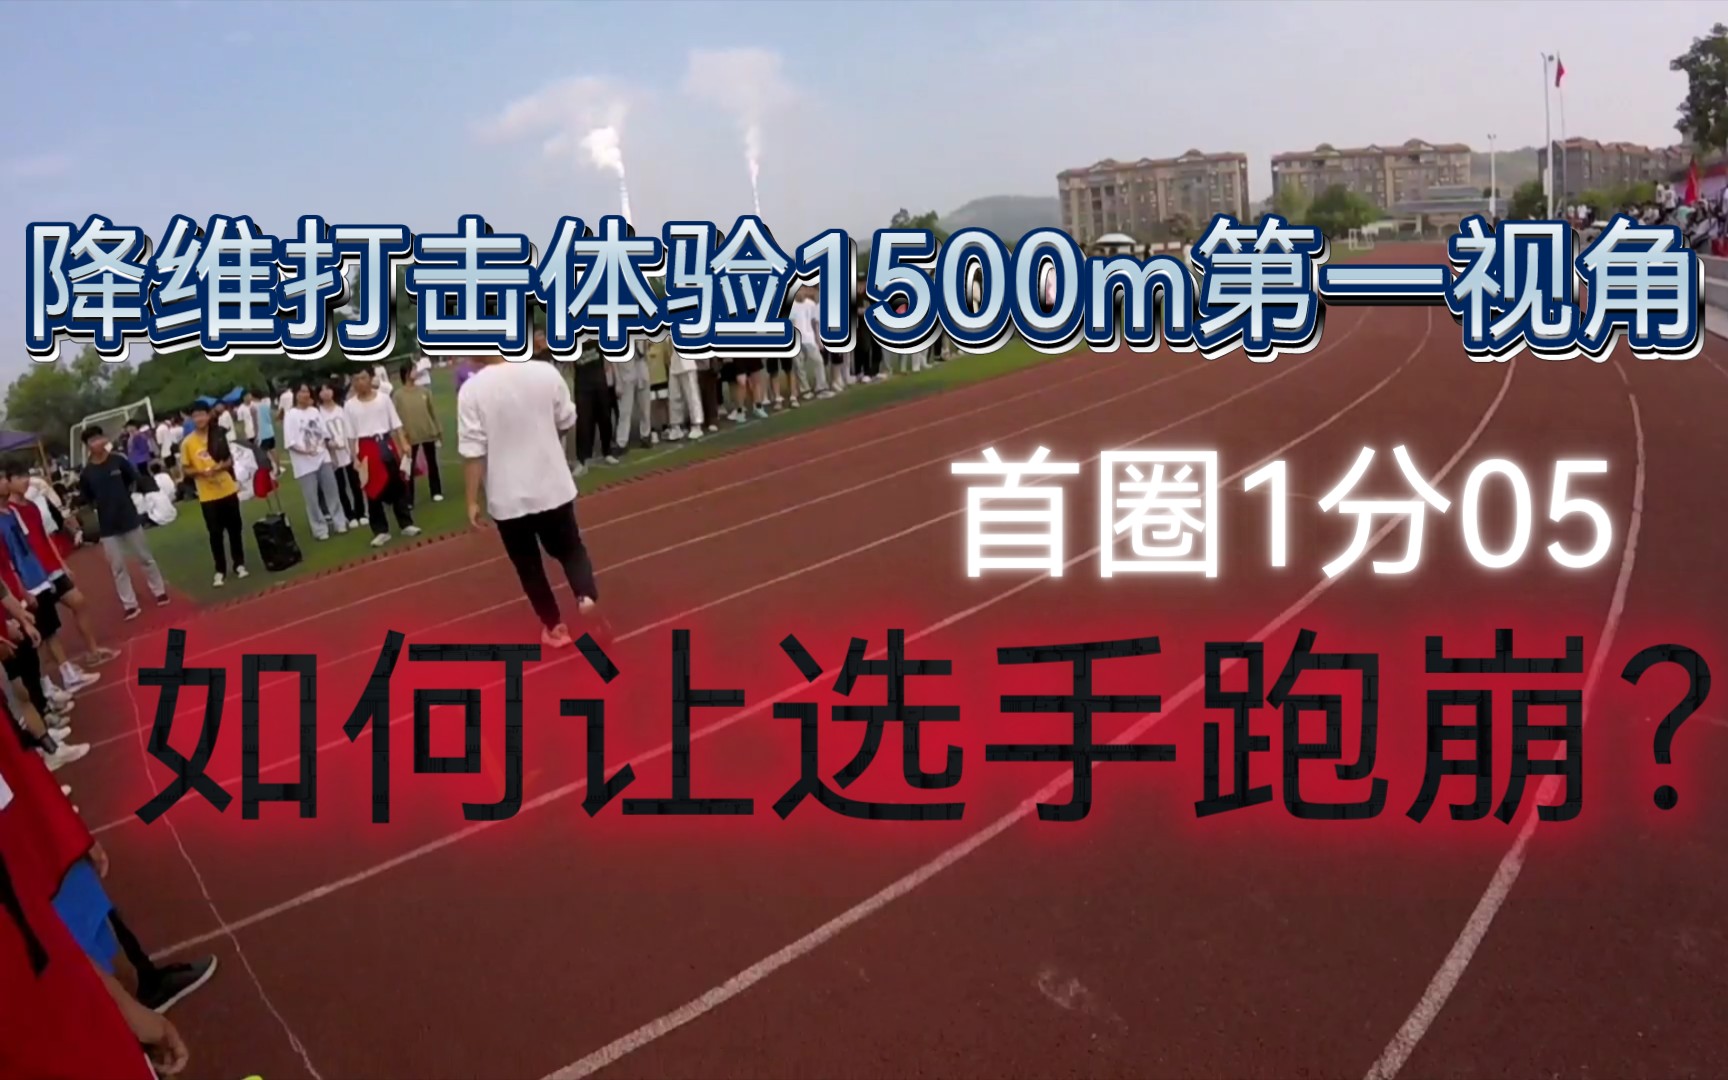 降维打击！第一视角体验校运会1500m顺腿4分37秒破尘封16年前记录！